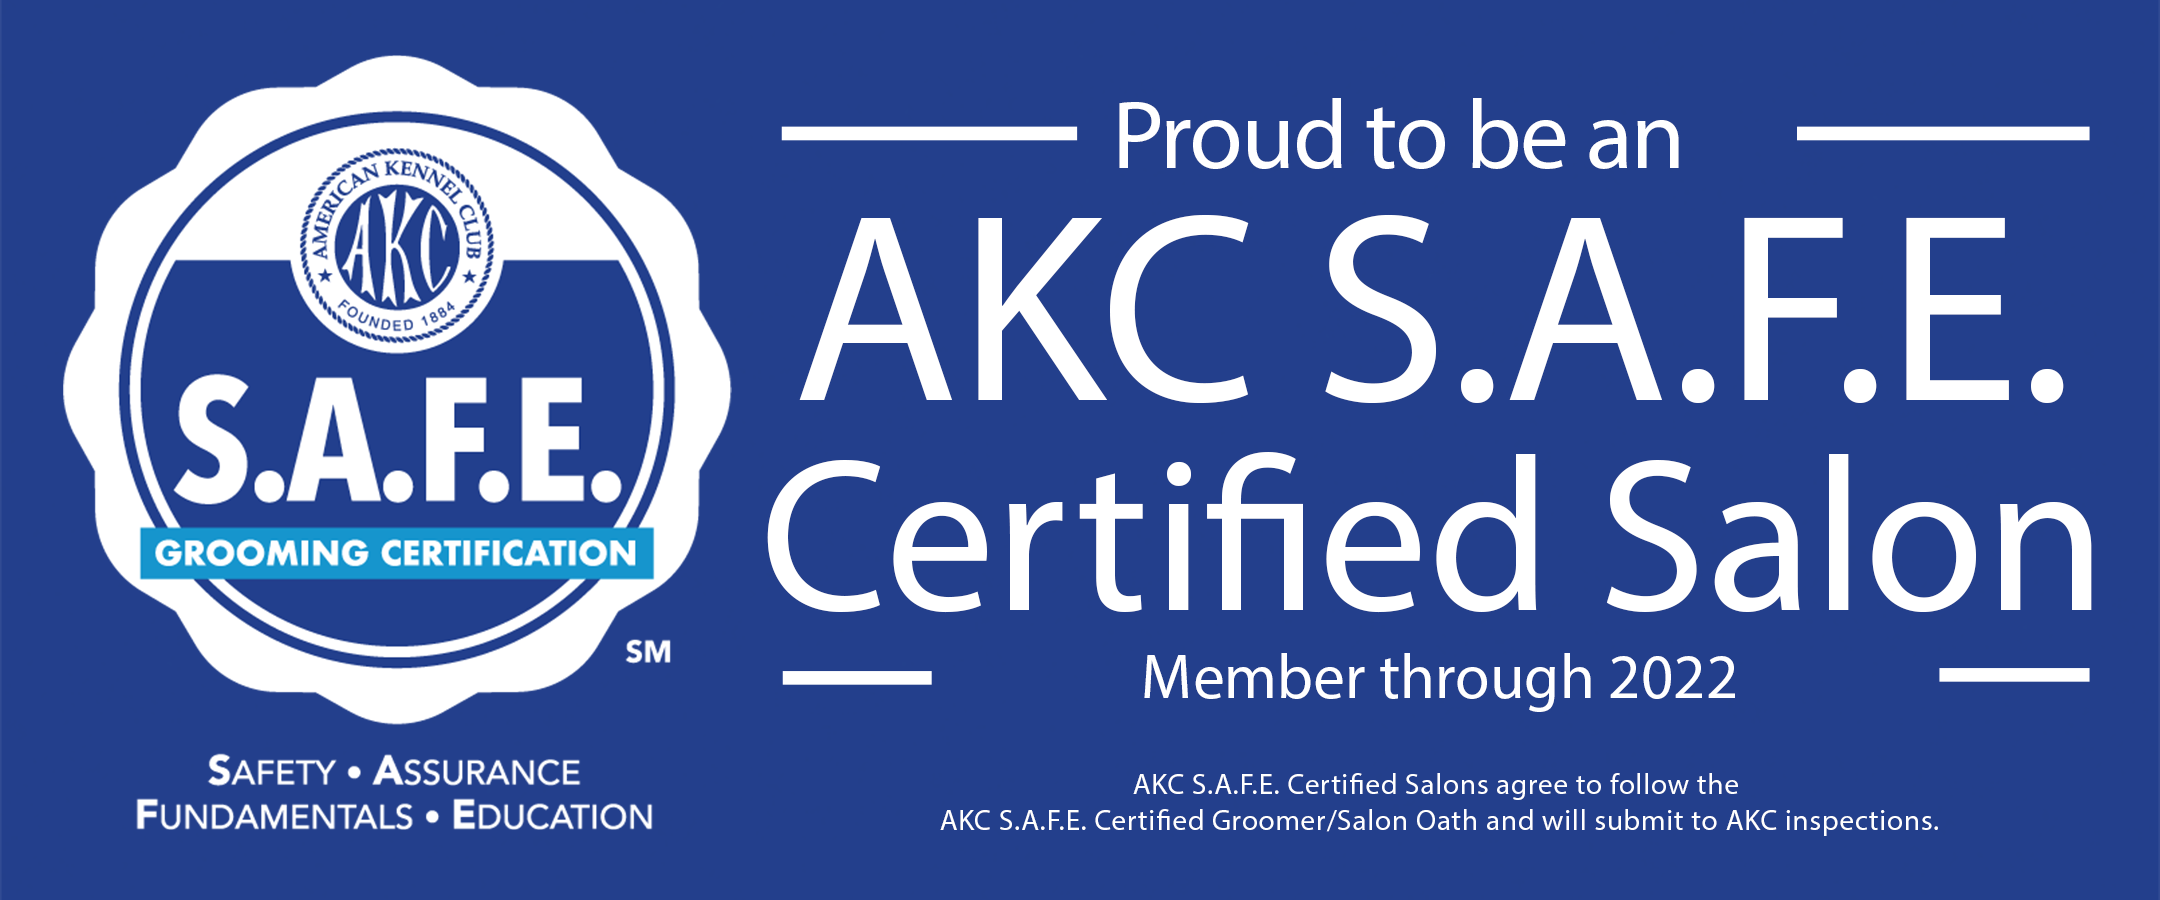 AKC Certified Salon